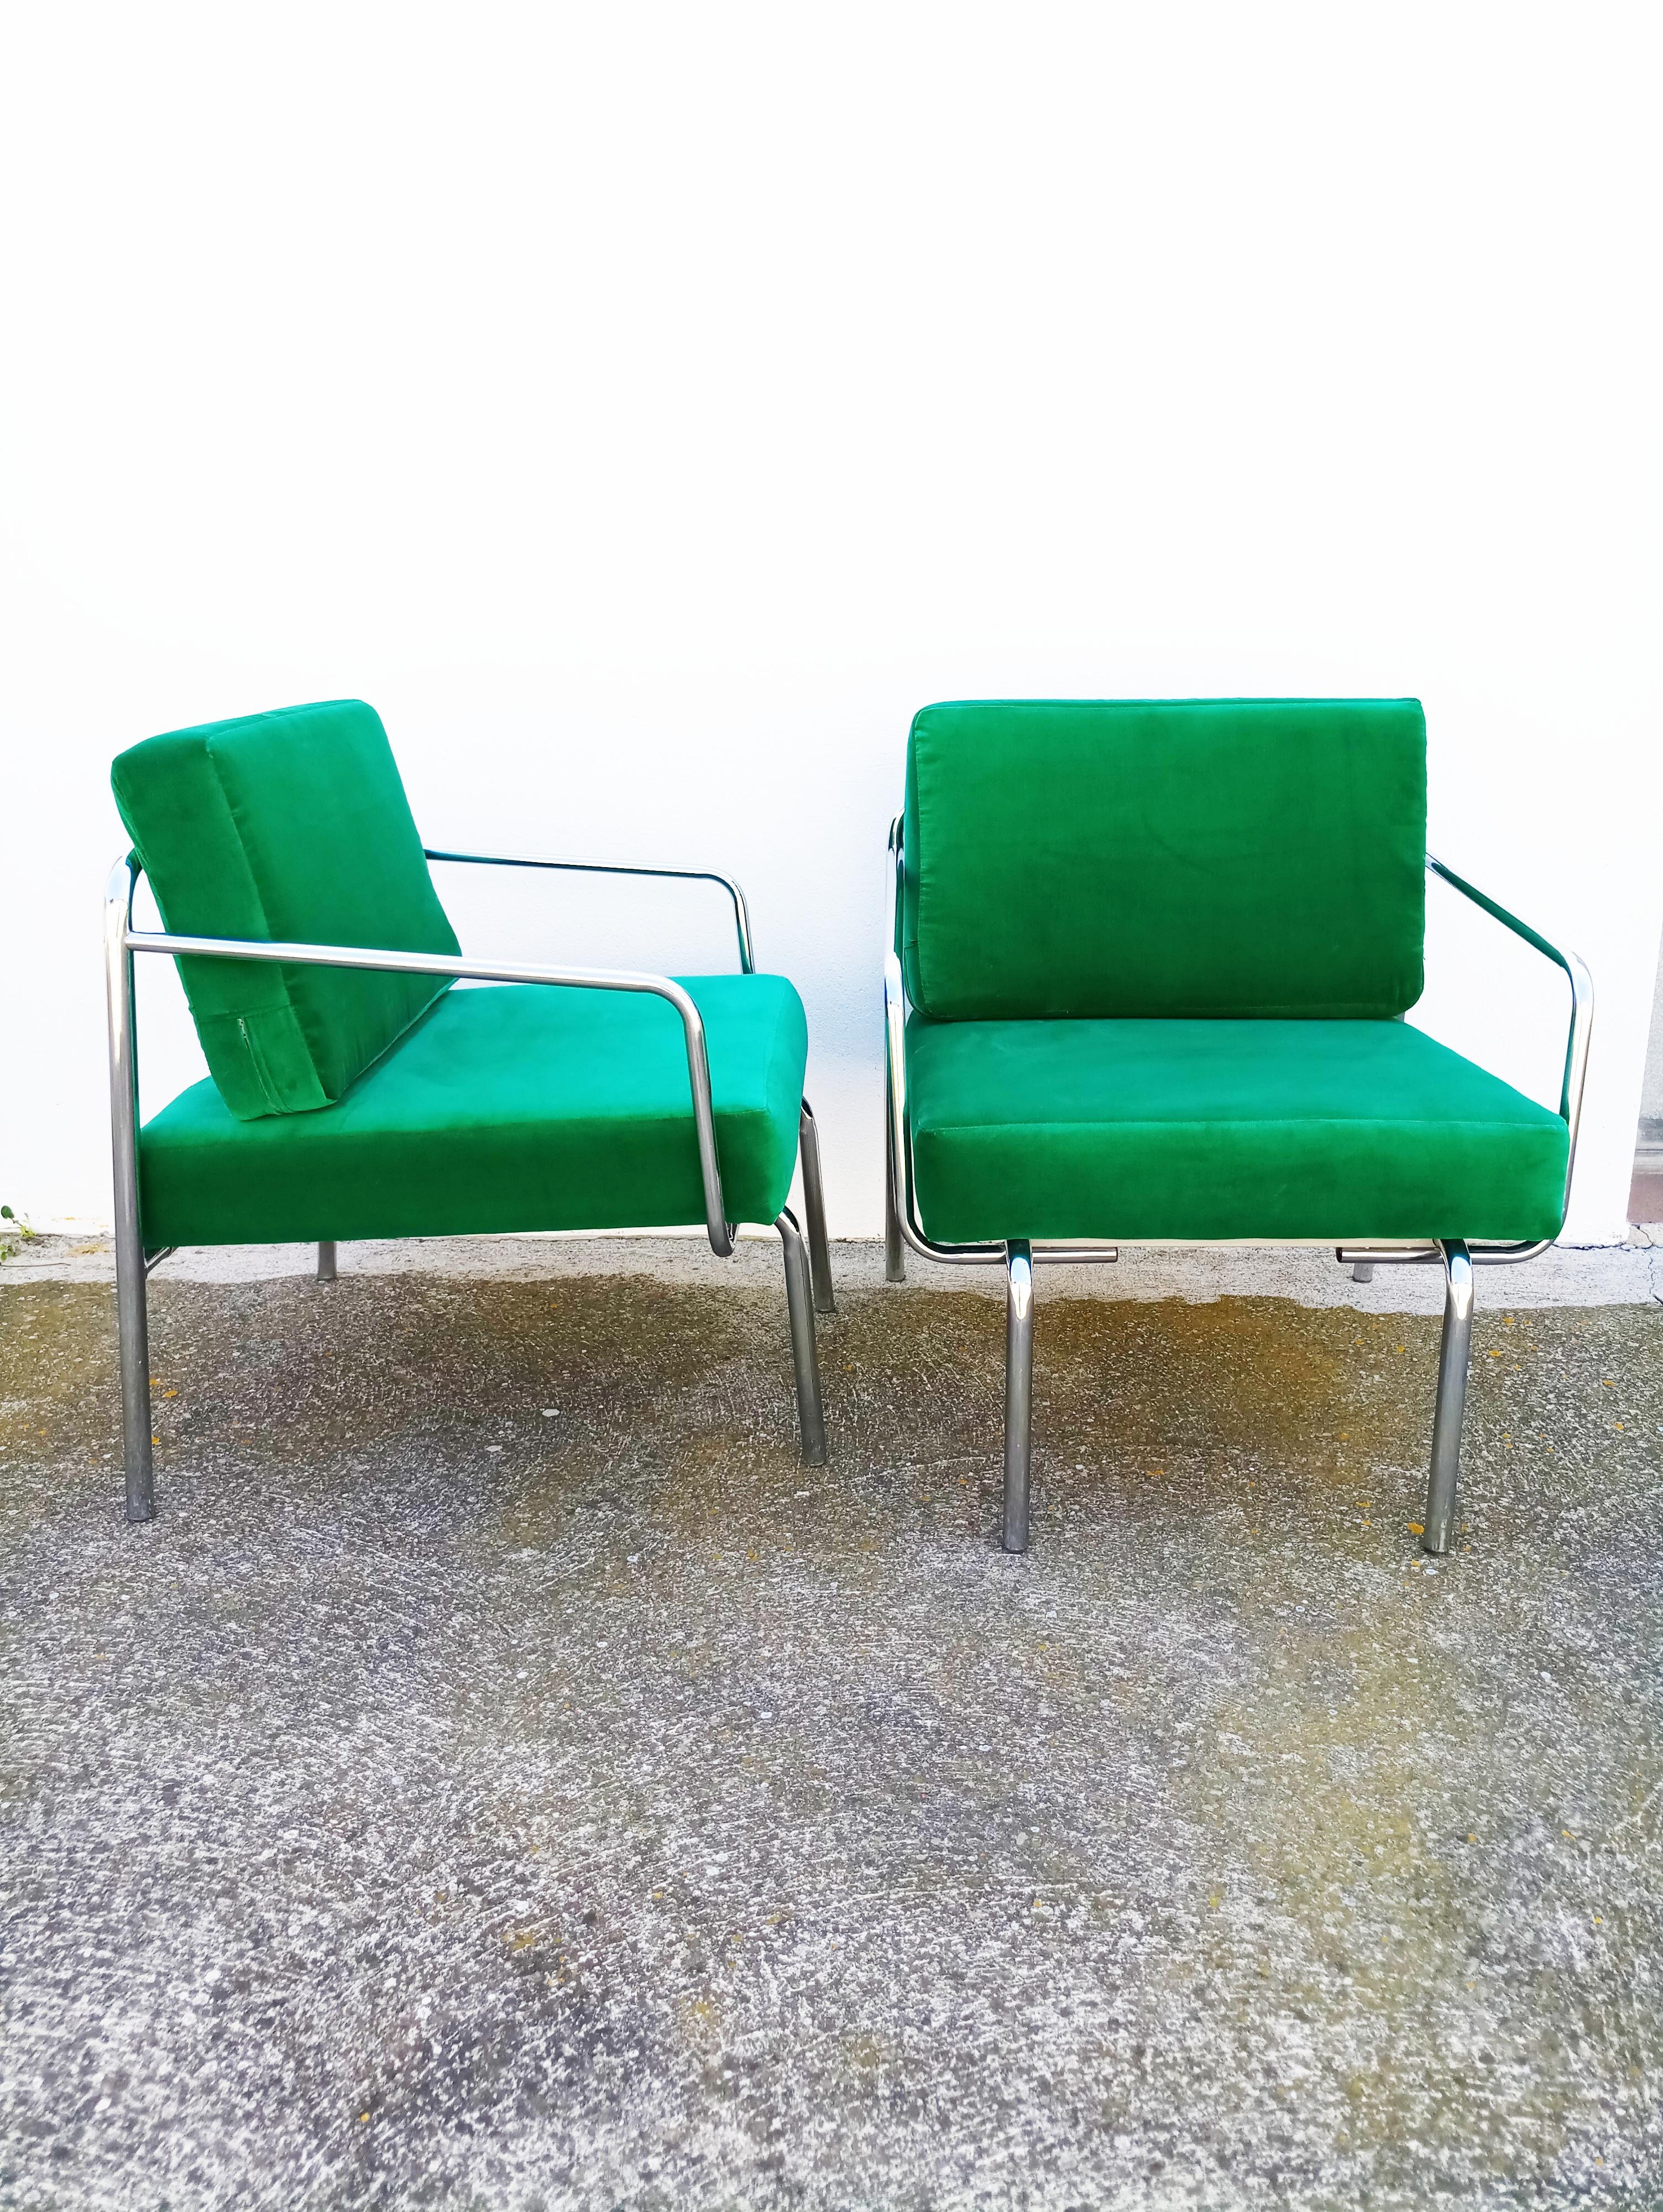 Schönes und seltenes Paar Sessel aus grünem Samt aus den 1970er Jahren, hergestellt in Italien, grüner Samt neu, Schaumstoff neu, in perfektem Vintage-Zustand.